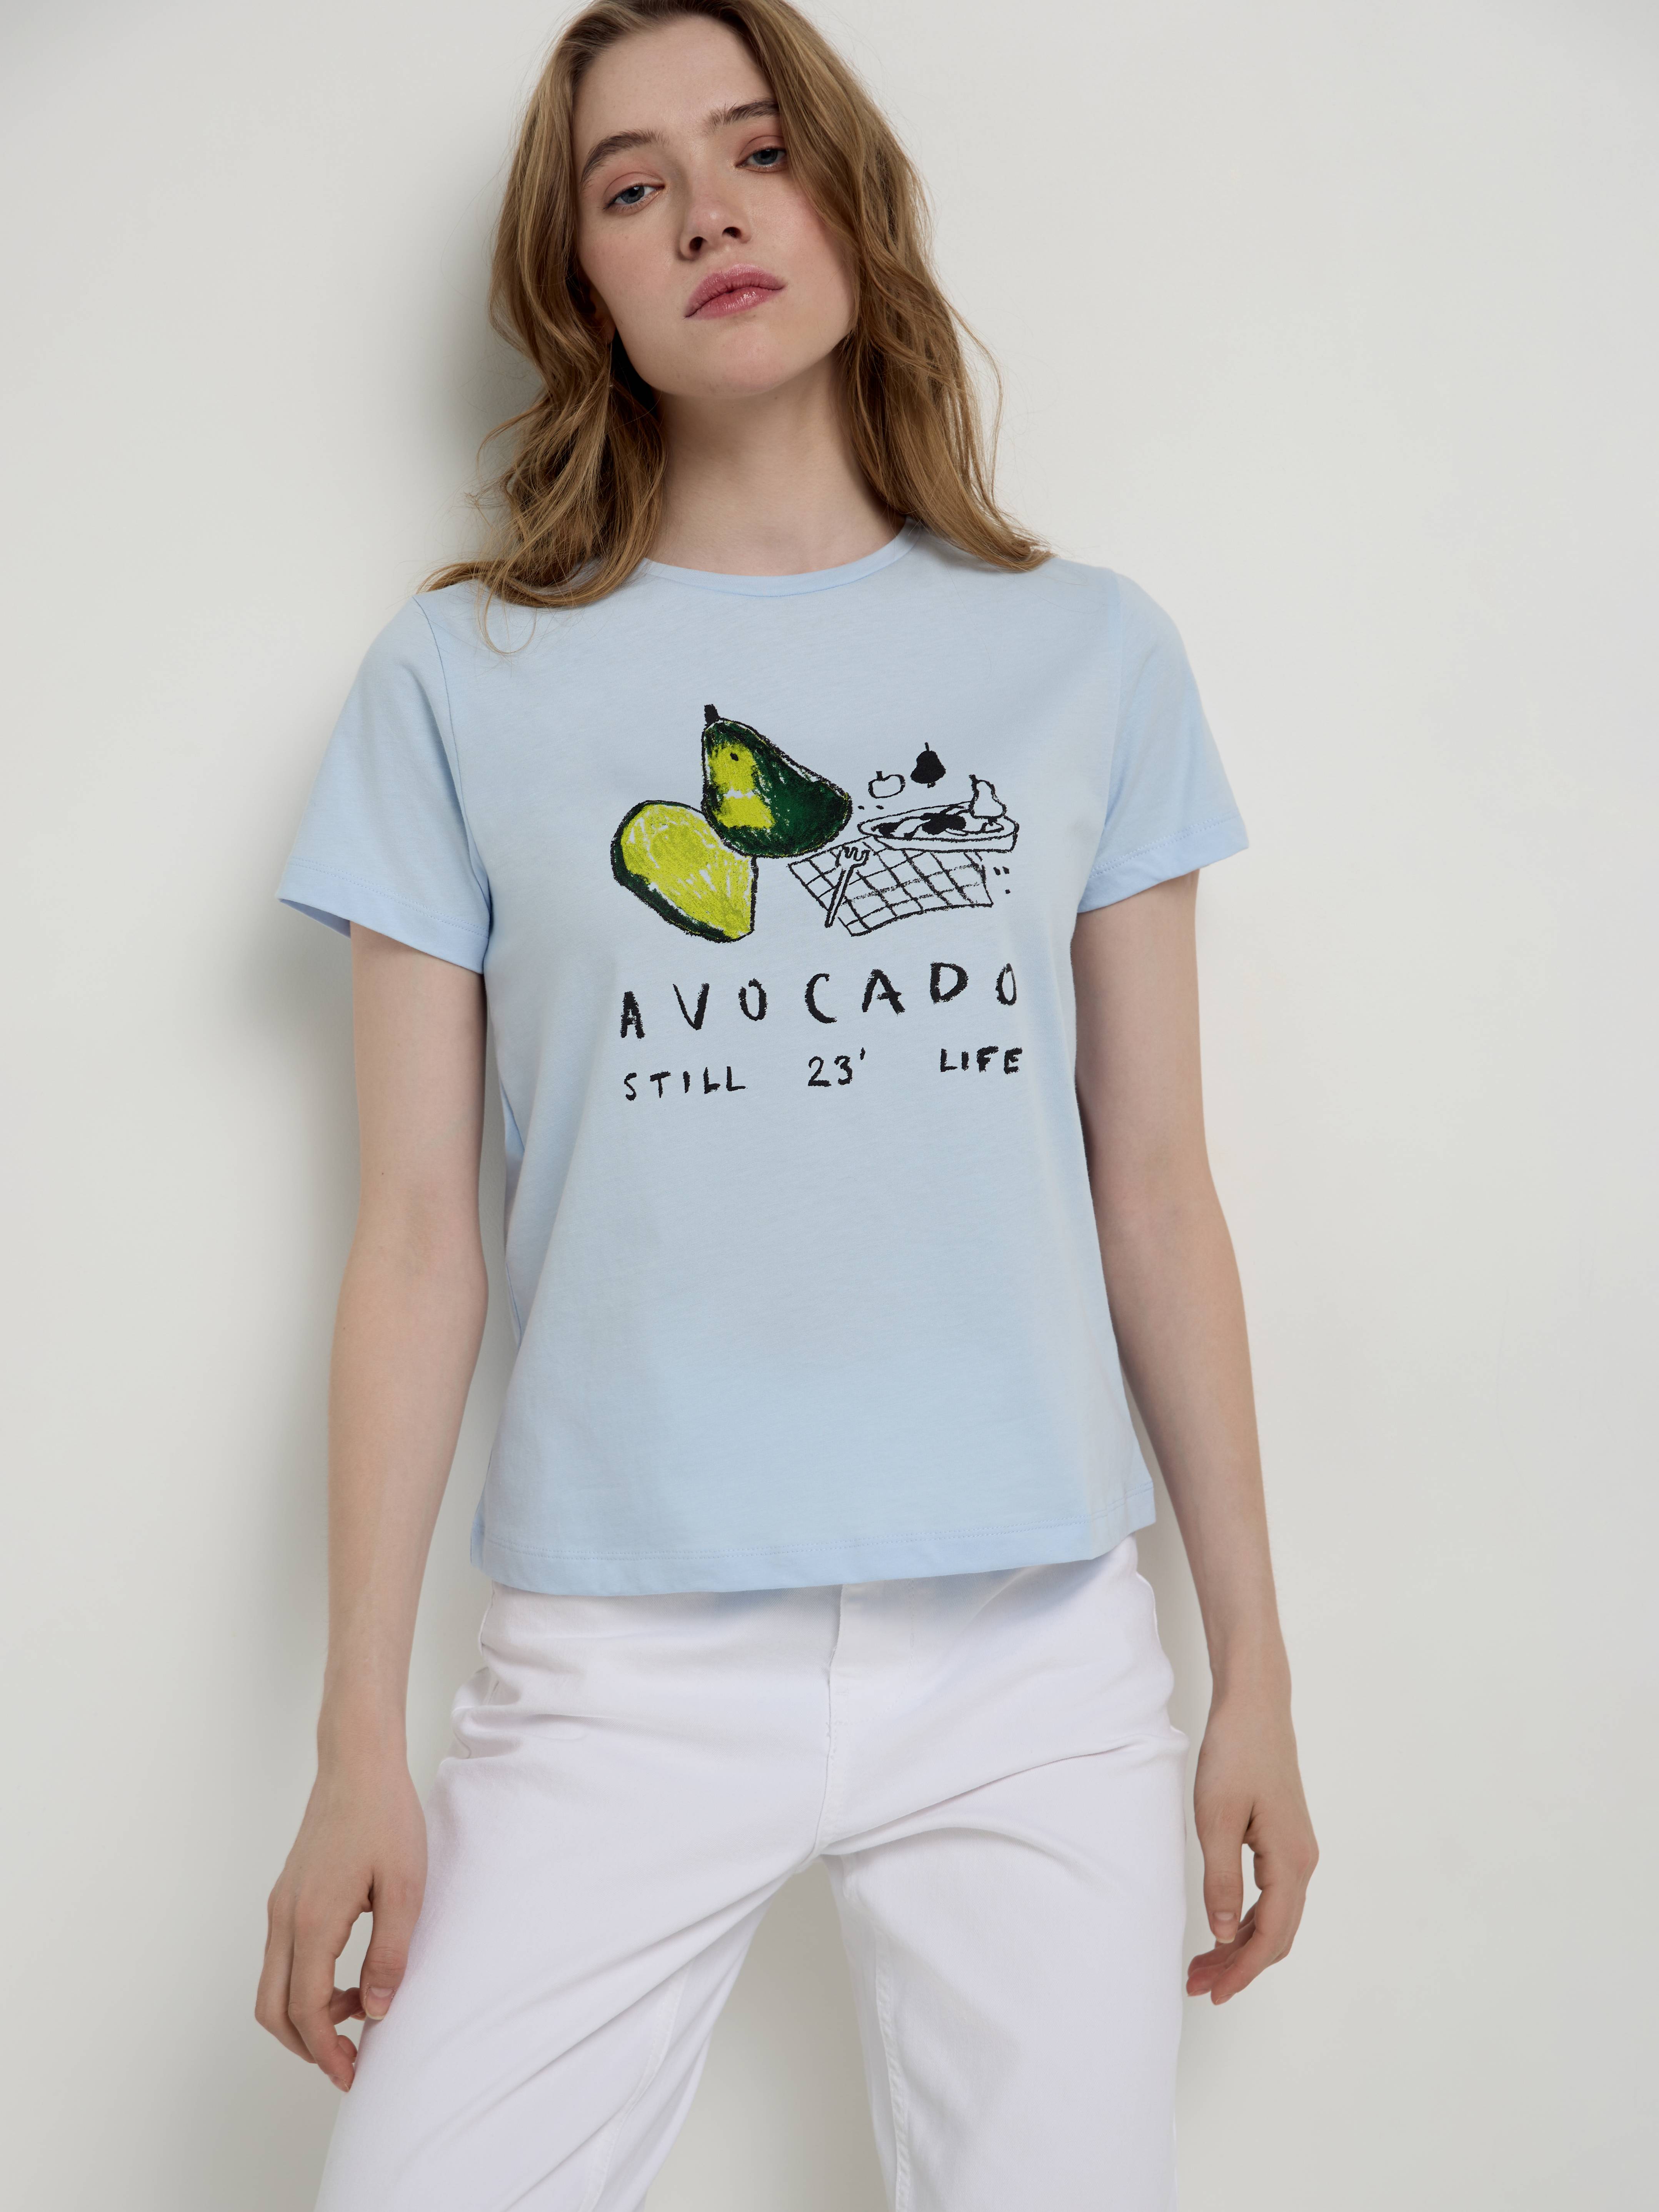 Базовая футболка из хлопка с рисунком «Avocado» LD 2132 Conte ⭐️, цвет sky blue, размер 170-100/xl